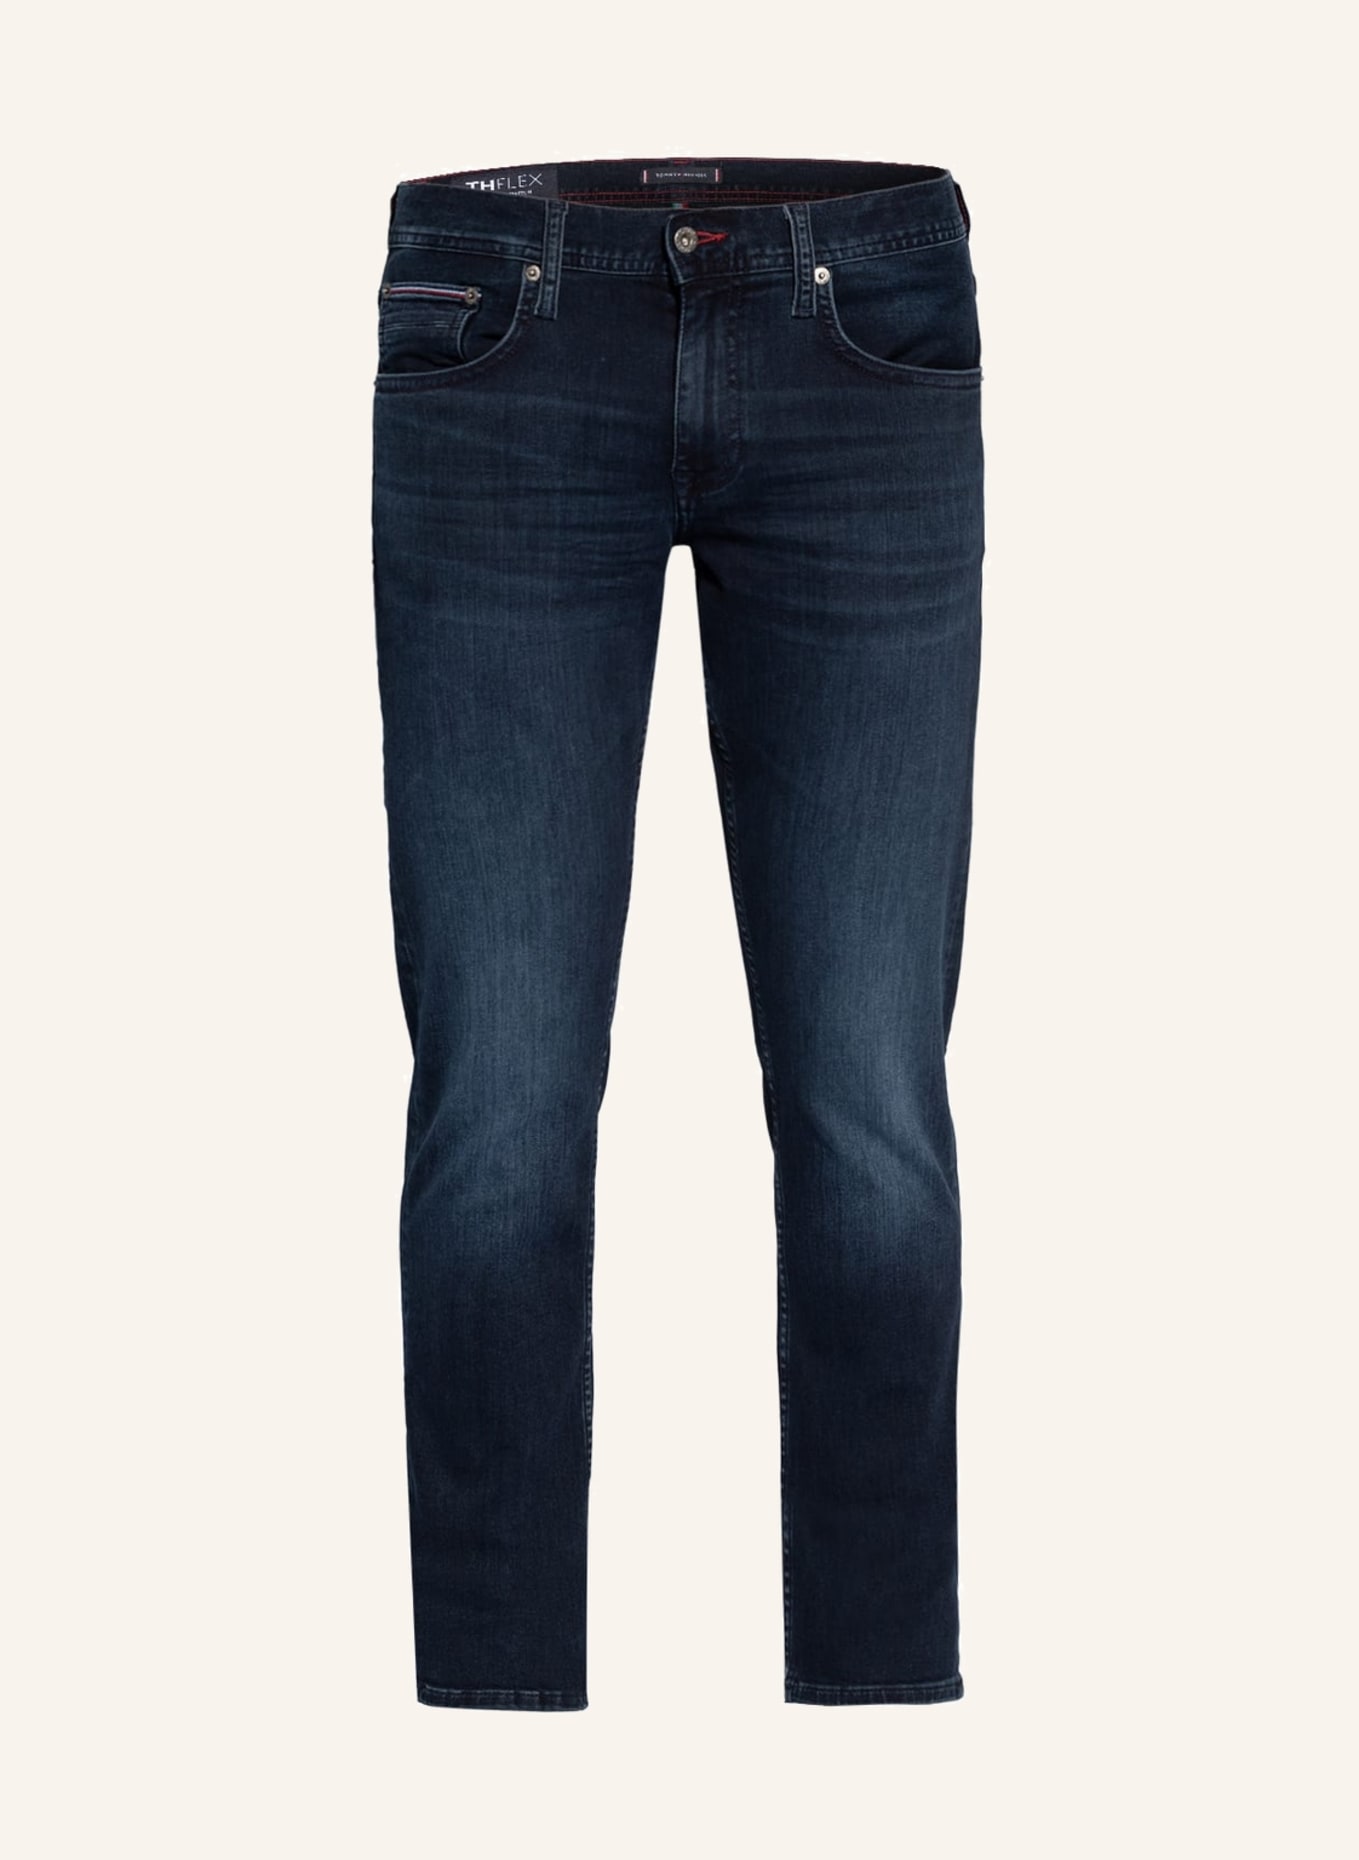 TOMMY HILFIGER Jeans BLEECKER Slim Fit, Farbe: 1CS Iowa Blueblack (Bild 1)